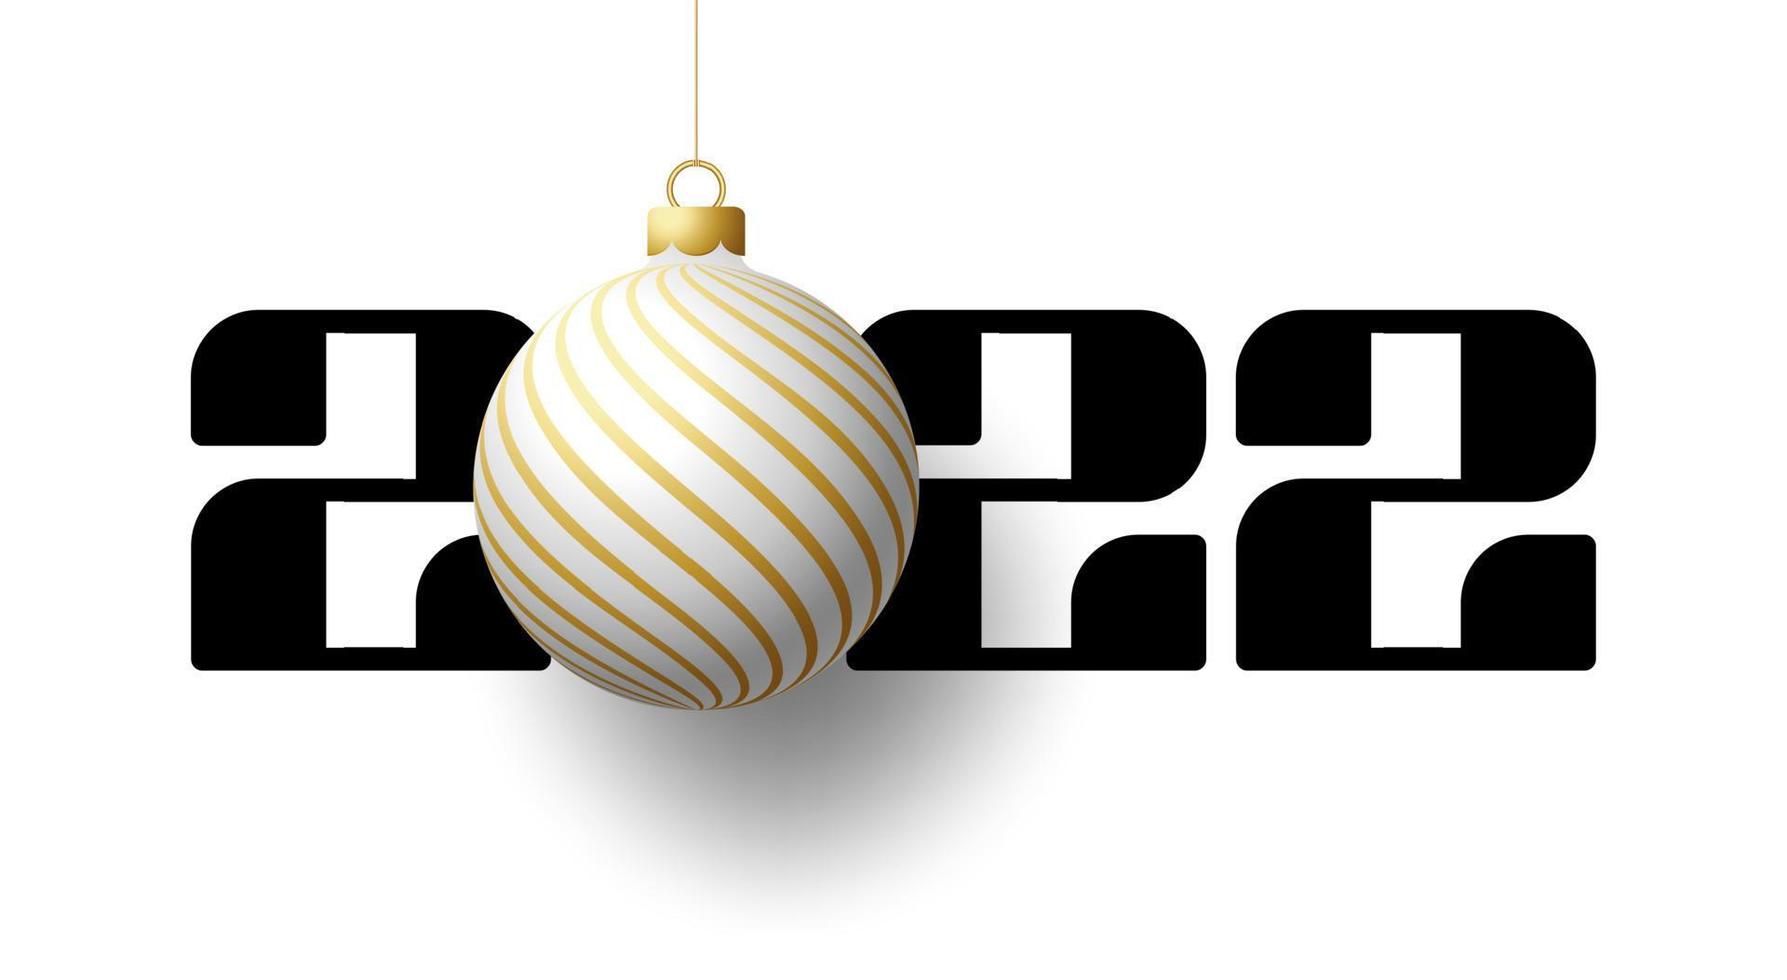 2022 Frohes neues Jahr. Luxus-Grußkarte mit einer weißen und goldenen Weihnachtsbaumkugel auf dem königlichen weißen Hintergrund. Vektor-Illustration vektor